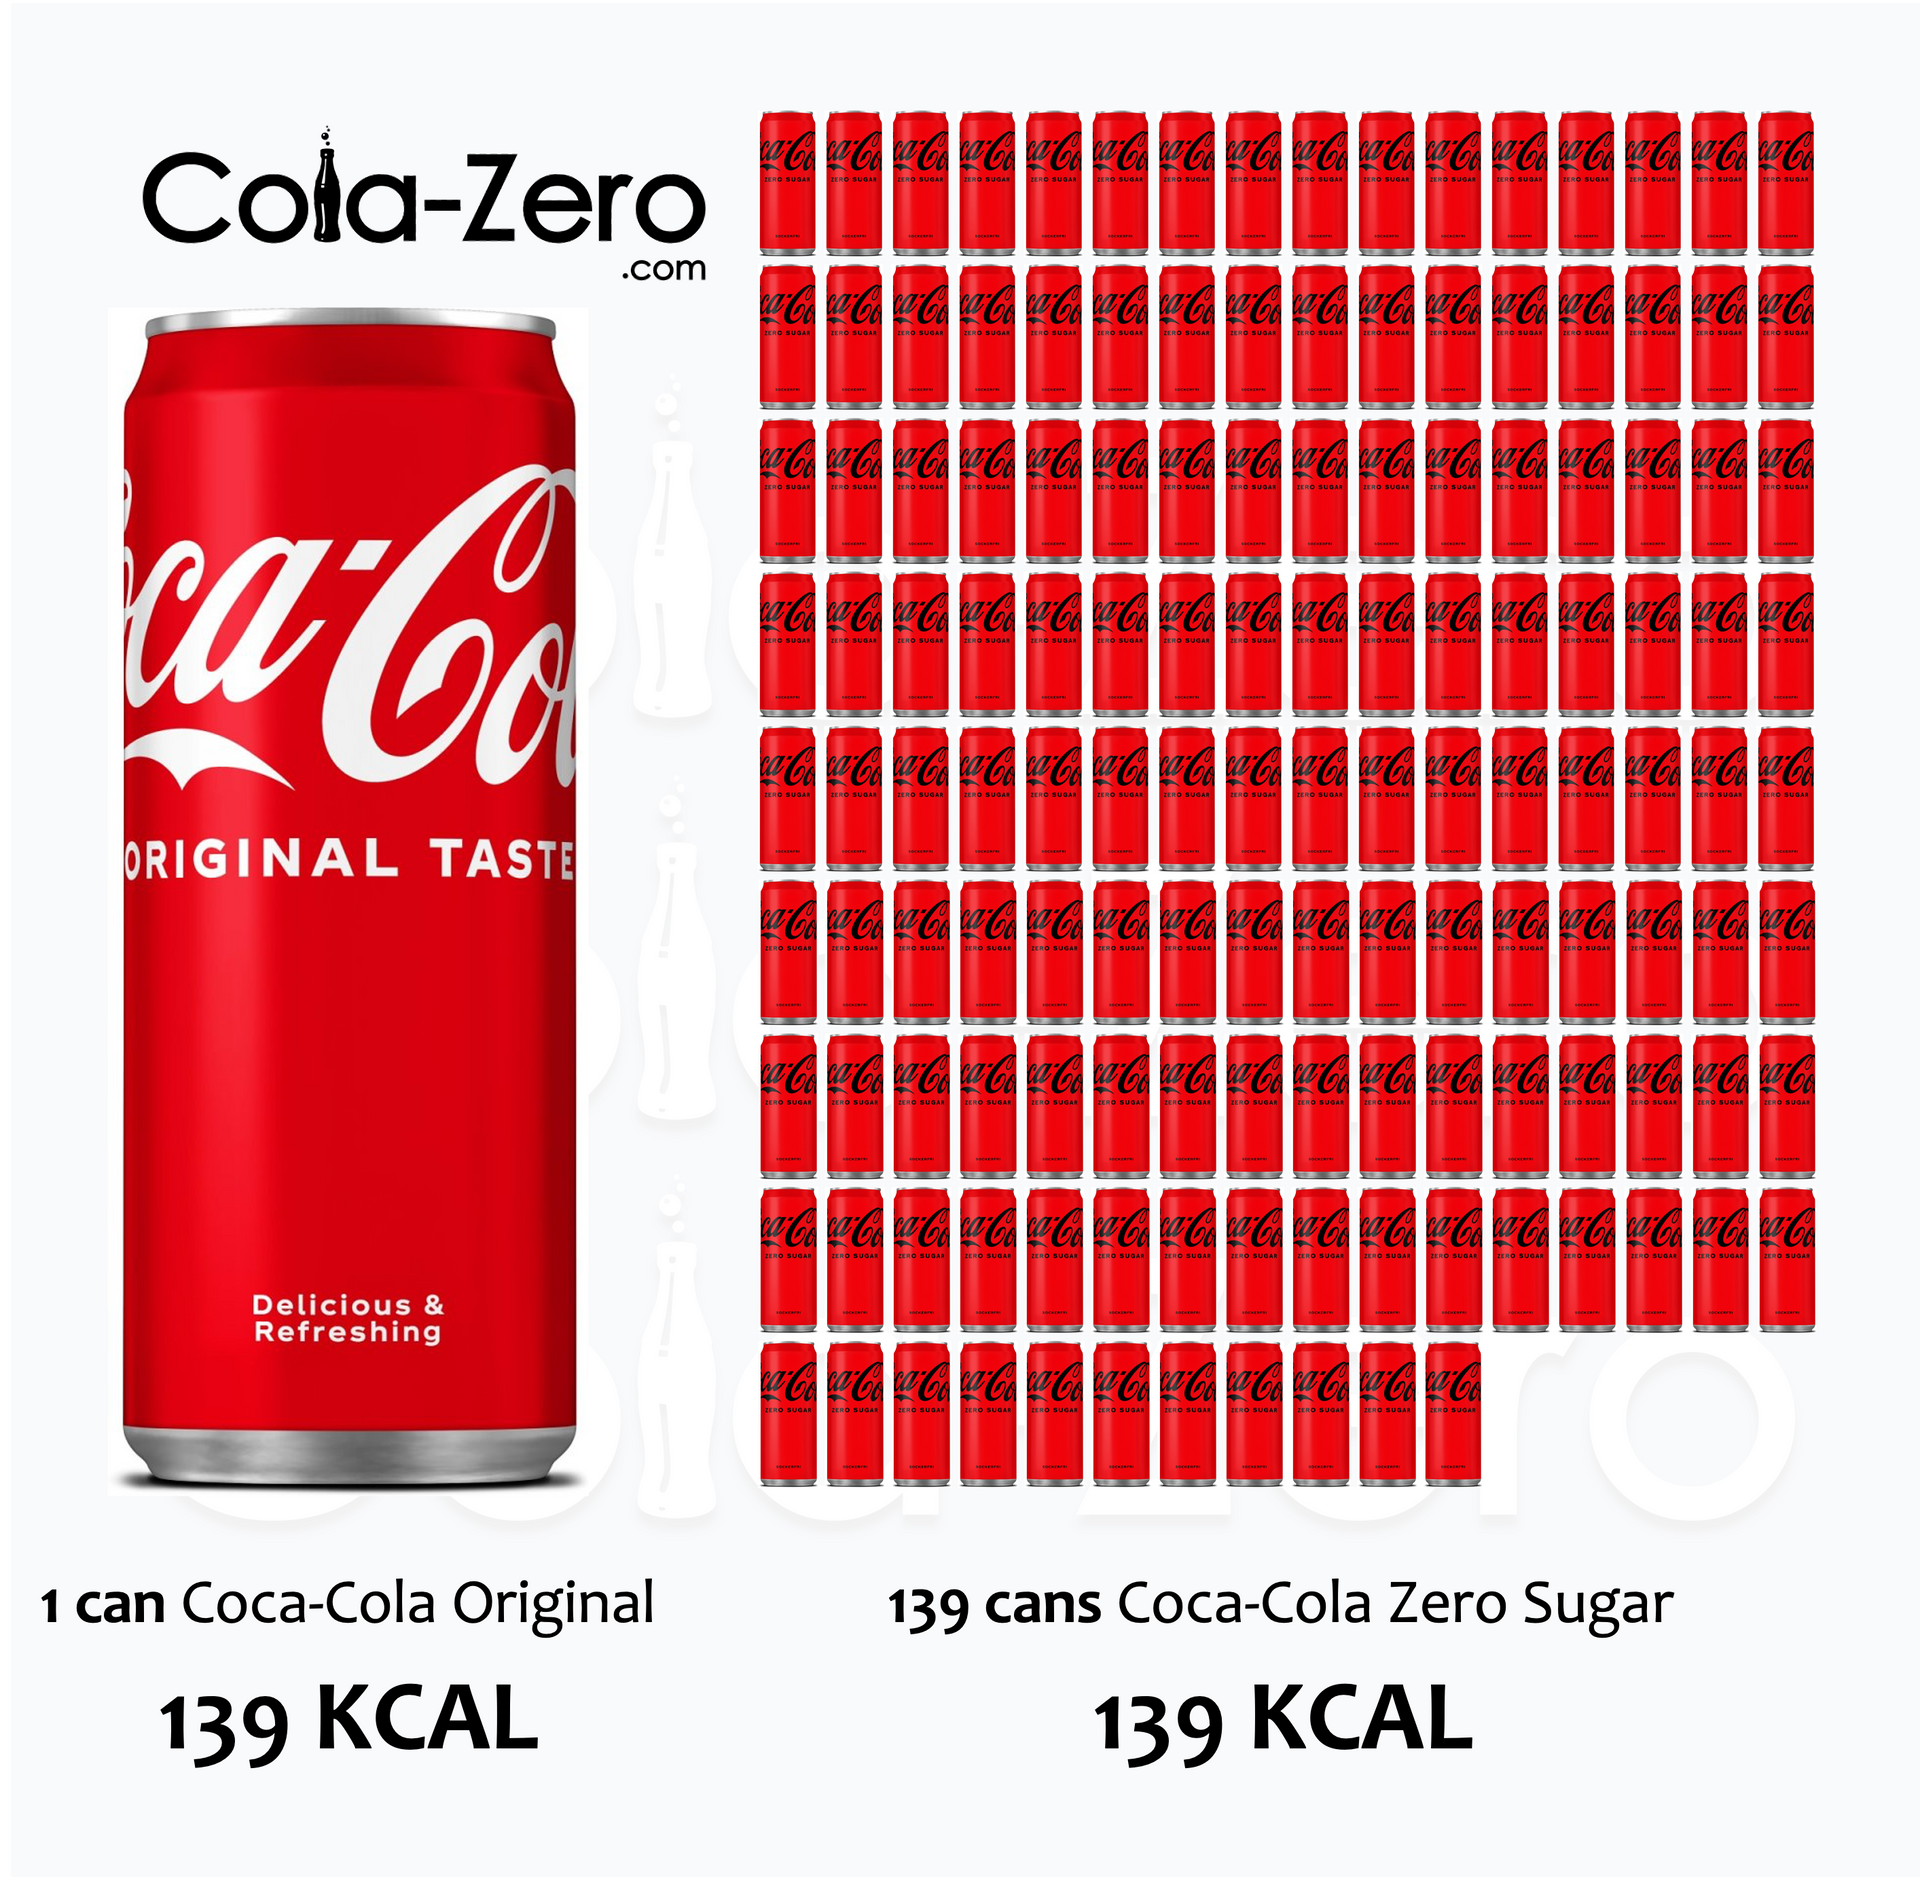 139-calories_1-can-of-Coca-Cola-Original-Taste-with-sugar_is_like_139-cans-of-Coca-Cola-Zero-Sugar_Cola-Zero.com